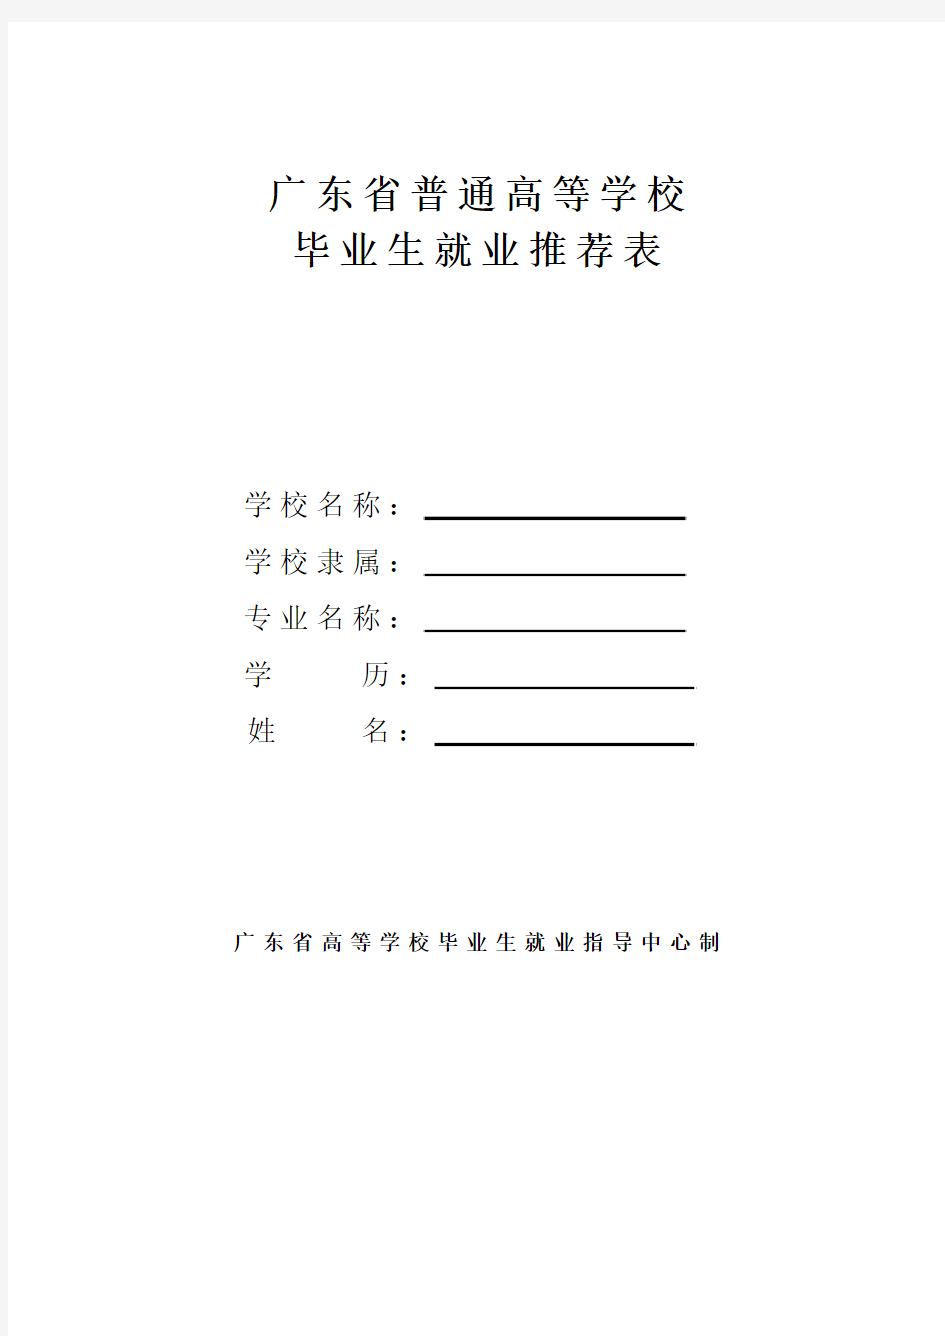 广东省普通高等学校毕业生就业推荐表填写示范(模板)